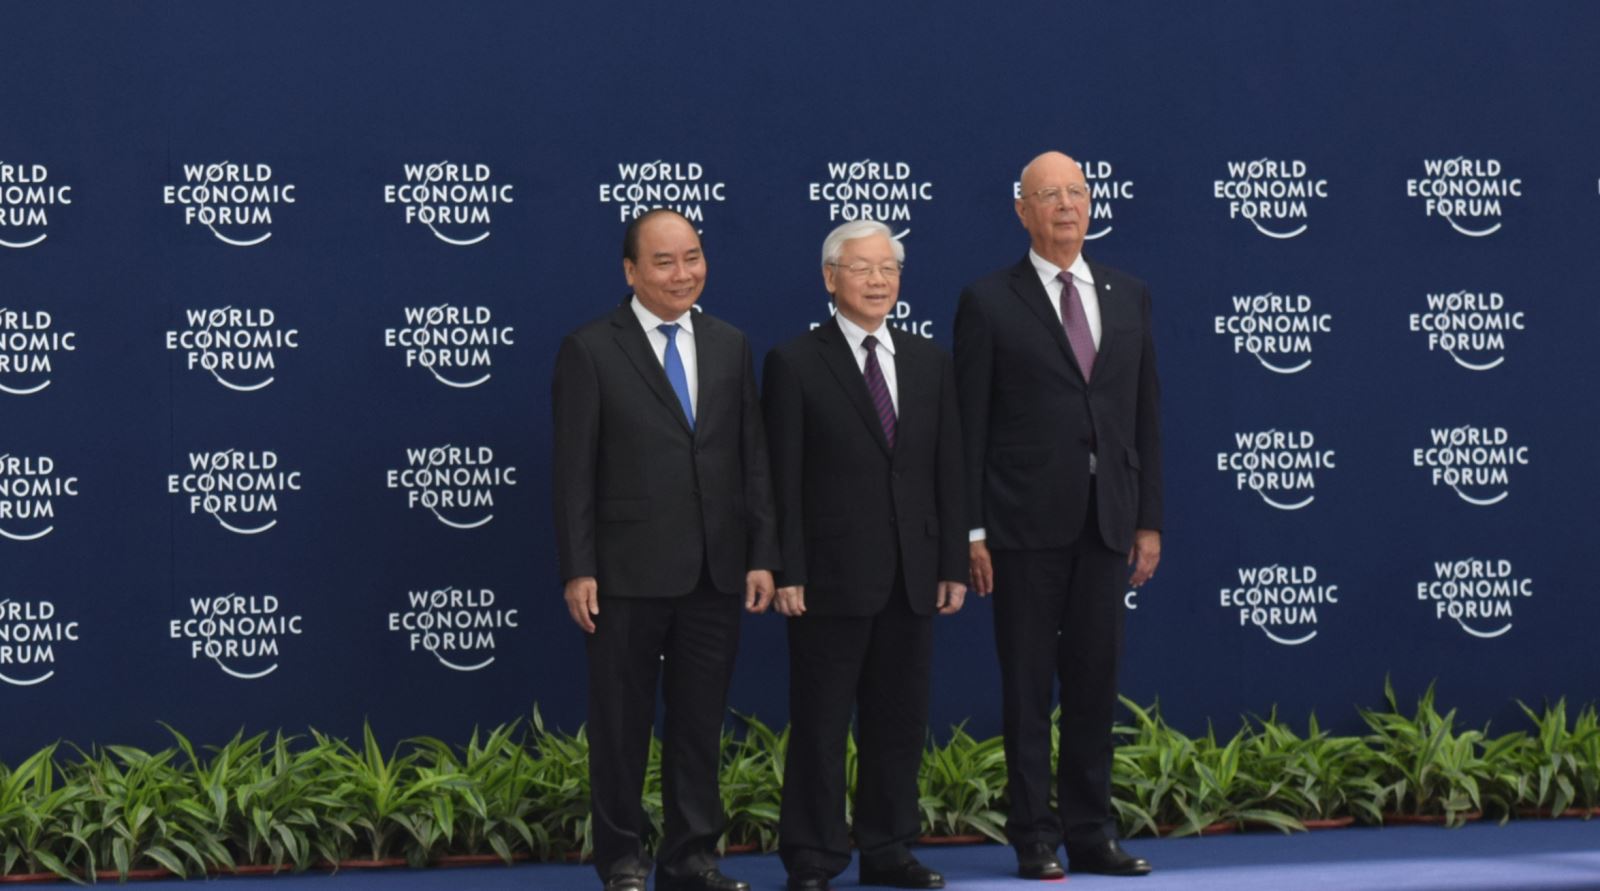 TRUNG TÂM HỘI NGHỊ QUỐC GIA PHỤC VỤ THÀNH CÔNG  HỘI NGHỊ WEF ASEAN 2018